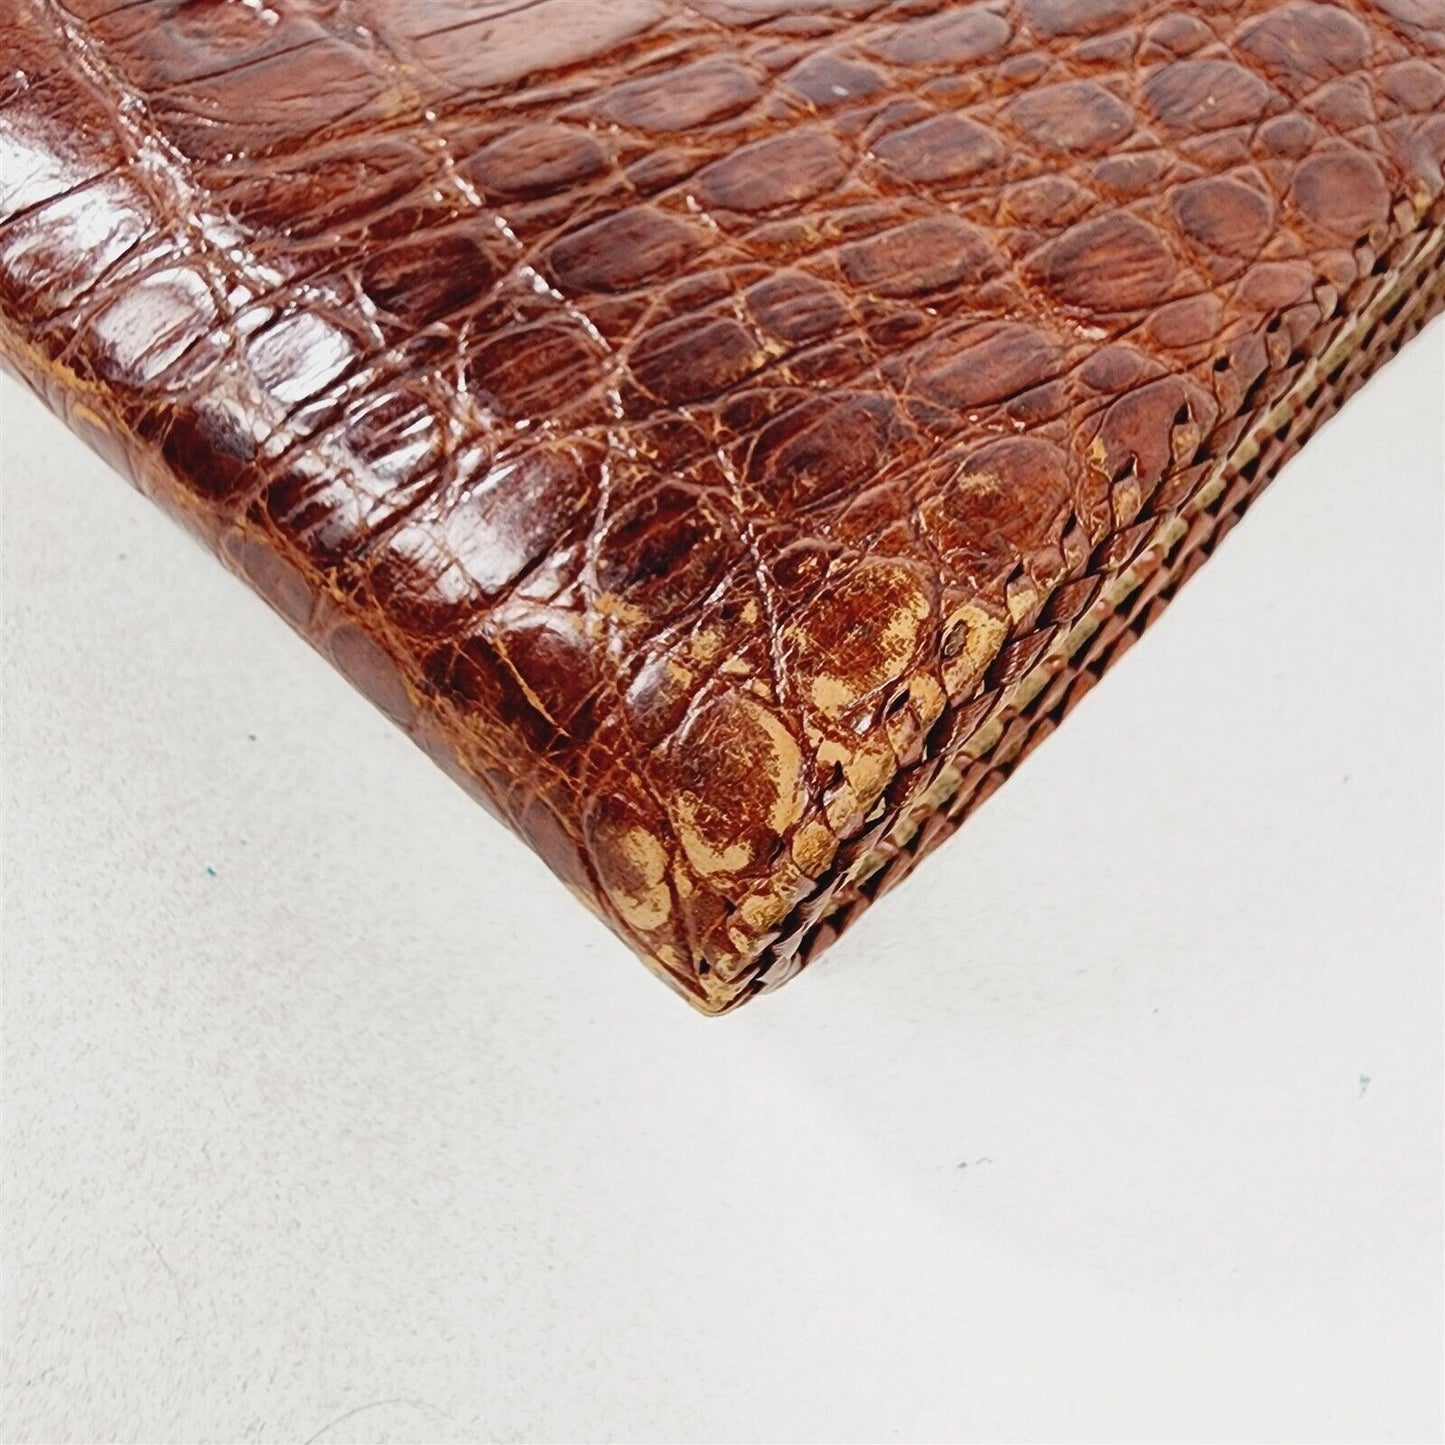 Vintage Alligator Leather Handbag Purse Shoulder Bag Adjustable Strap